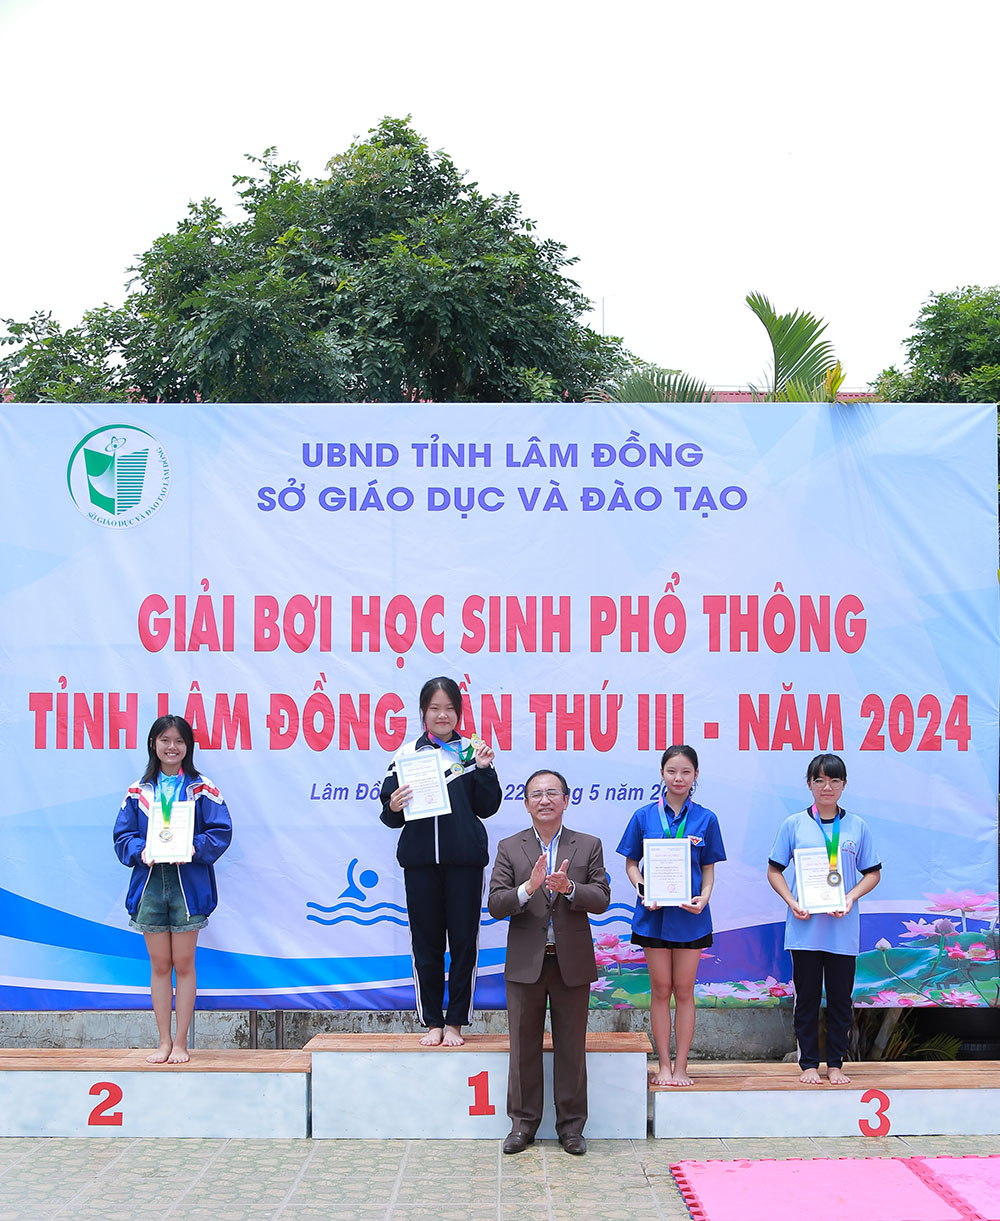 Cập nhật kết quả giải Bơi học sinh phổ thông tỉnh Lâm Đồng lần thứ III, năm 2024.